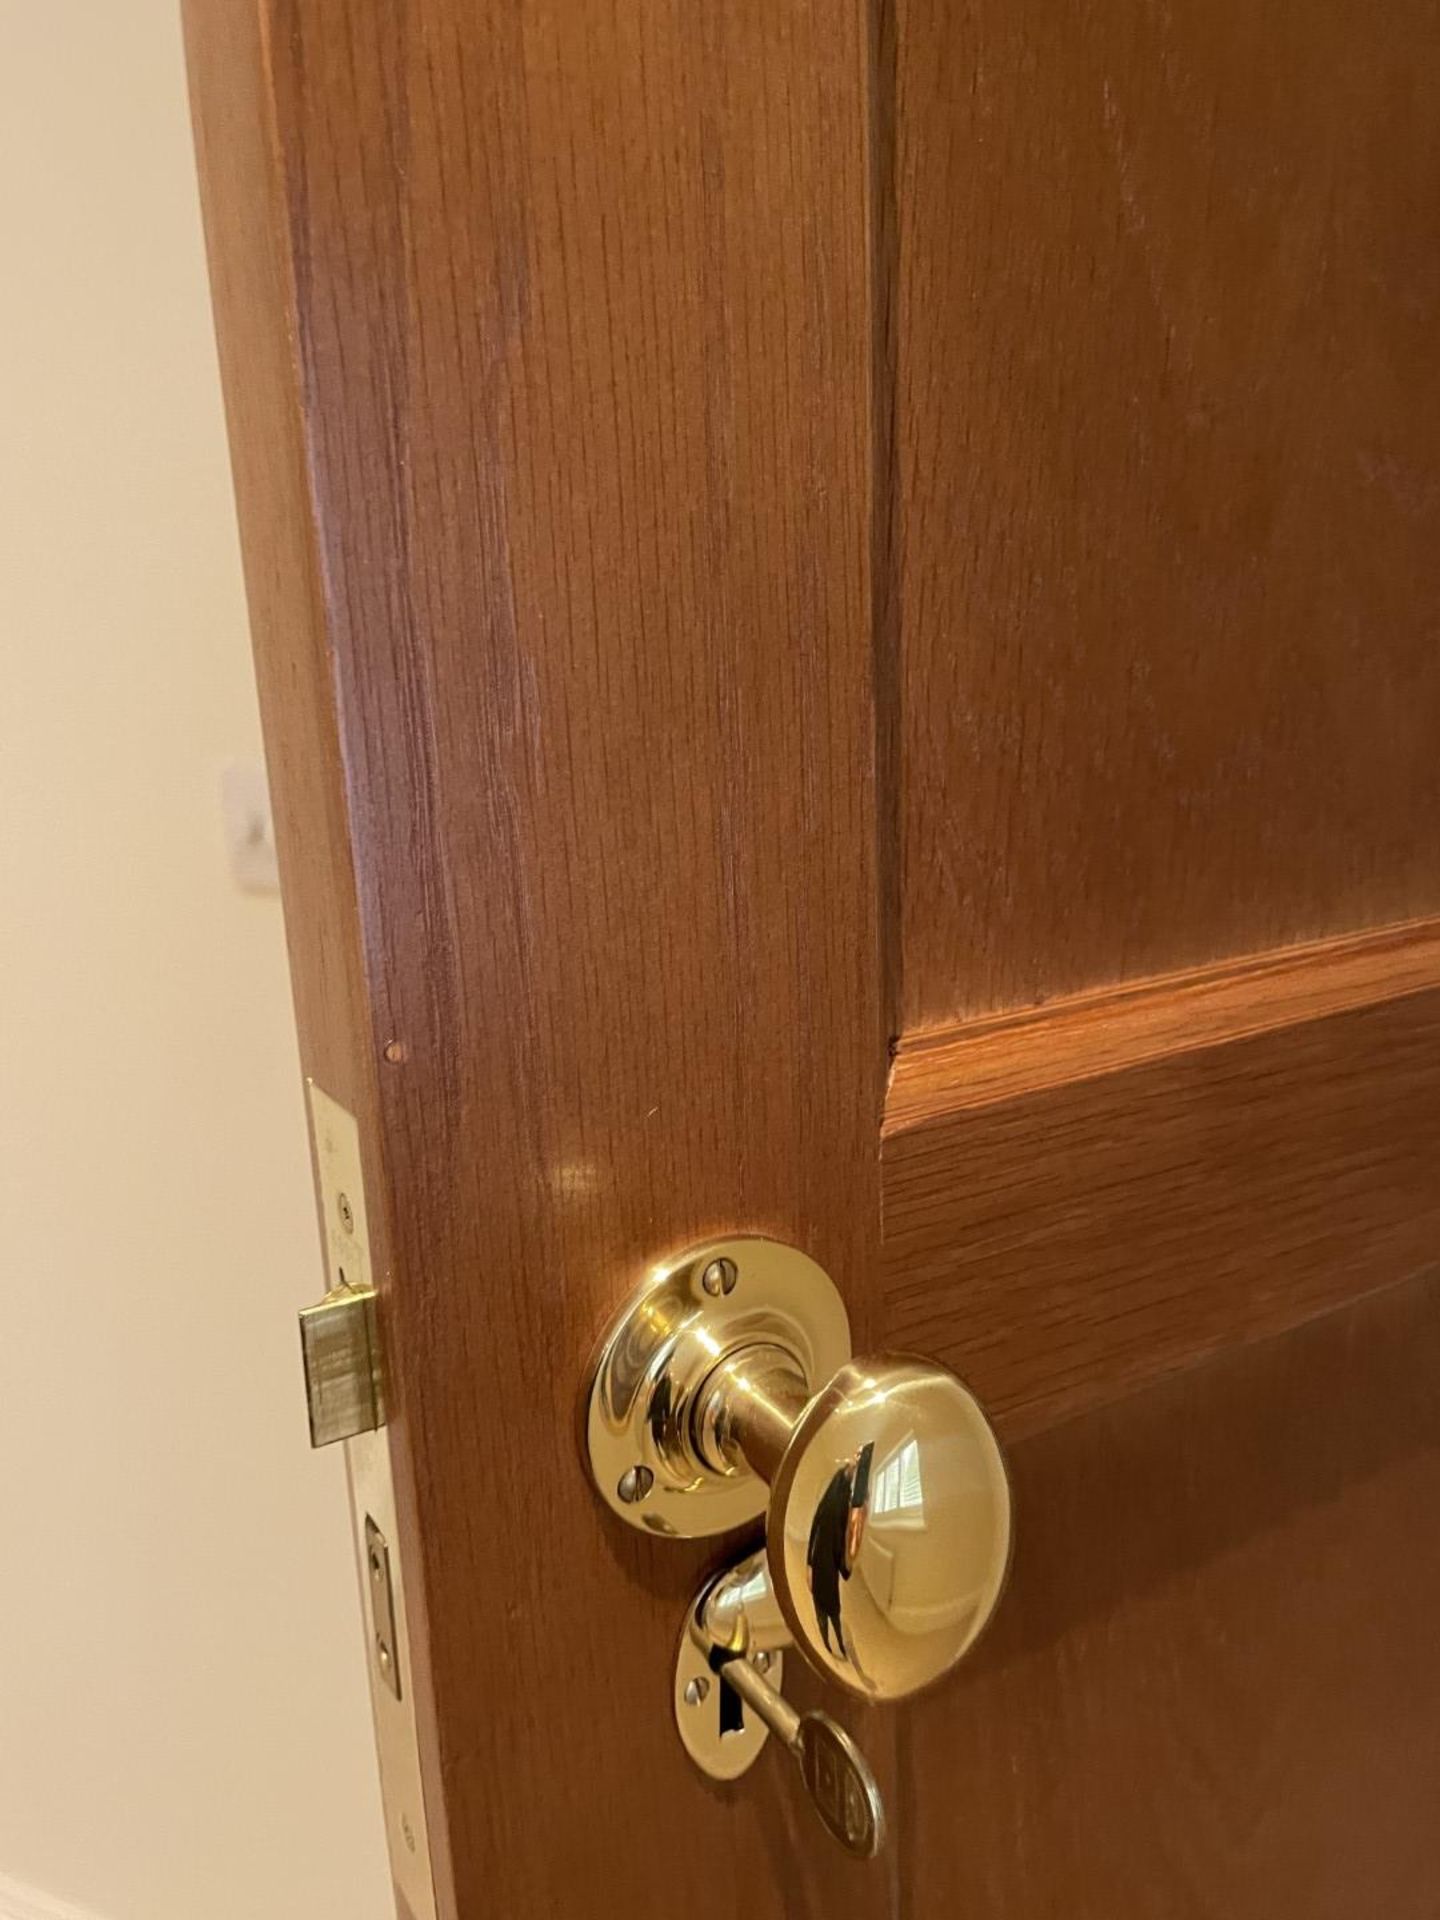 1 x Solid Oak Wooden Lockable Internal Door - Includes Handles and Hinges - Ref: PAN286 / - Image 5 of 17